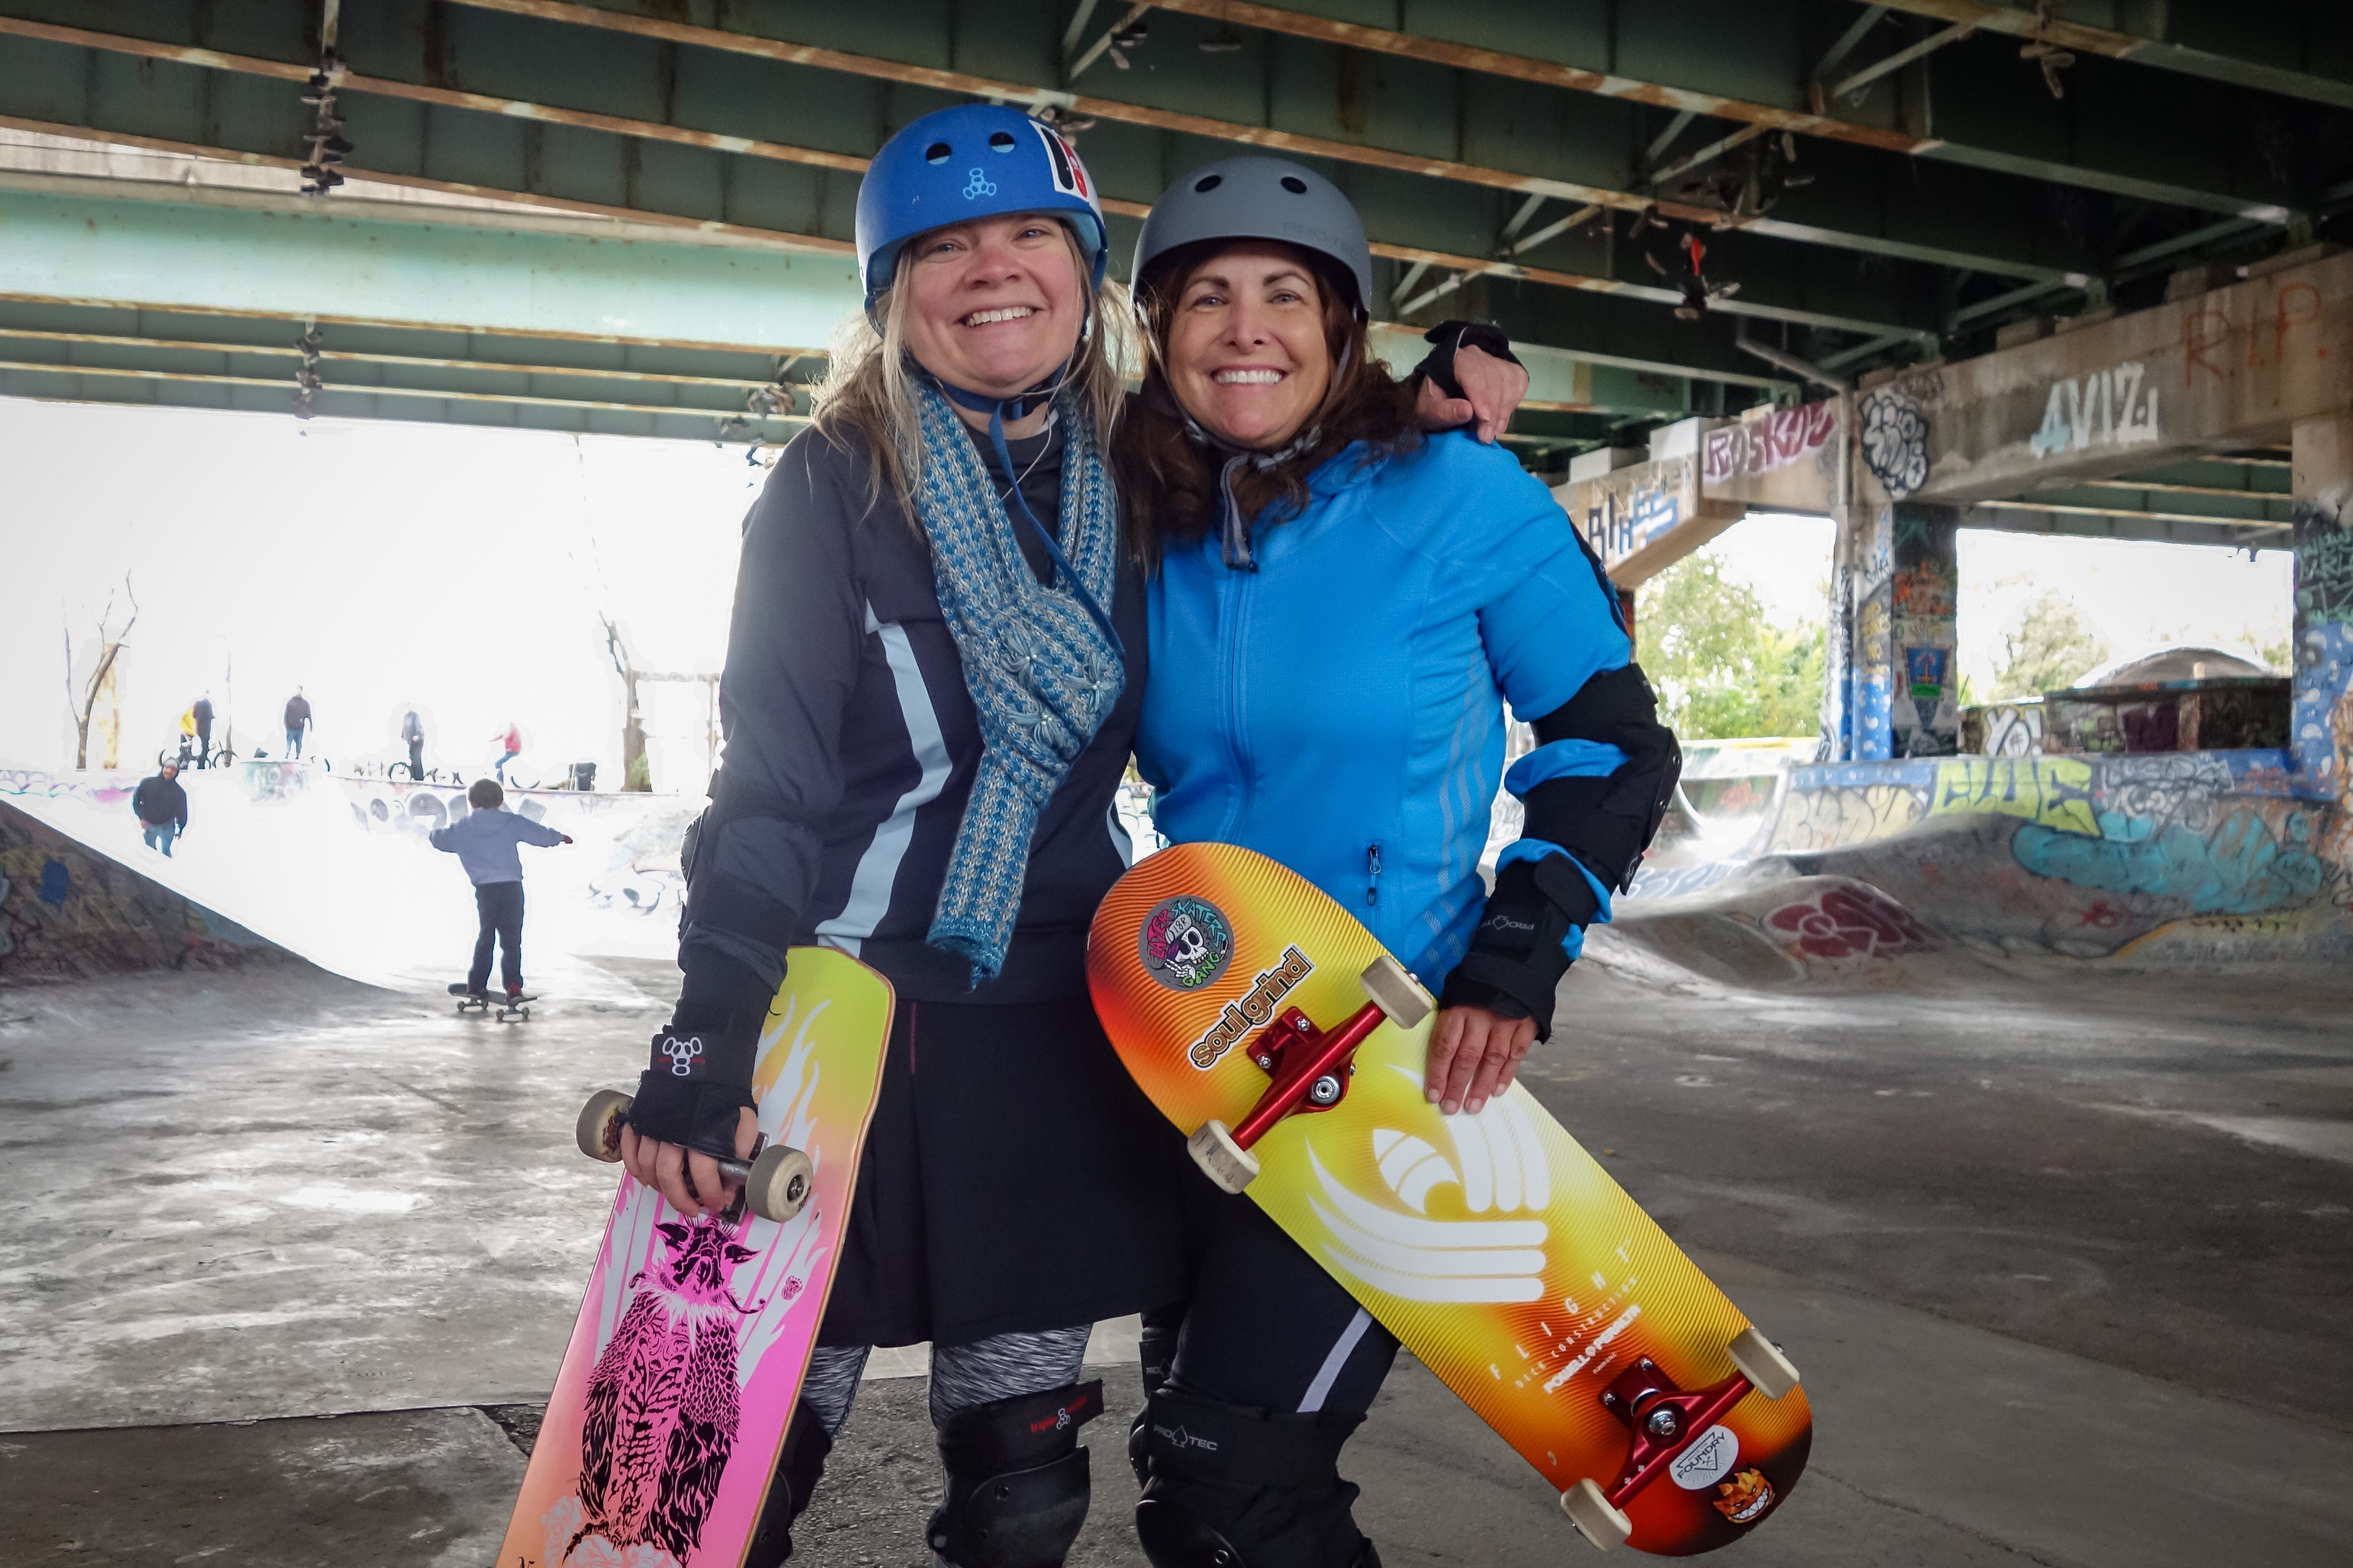 Two adult women skateboarders